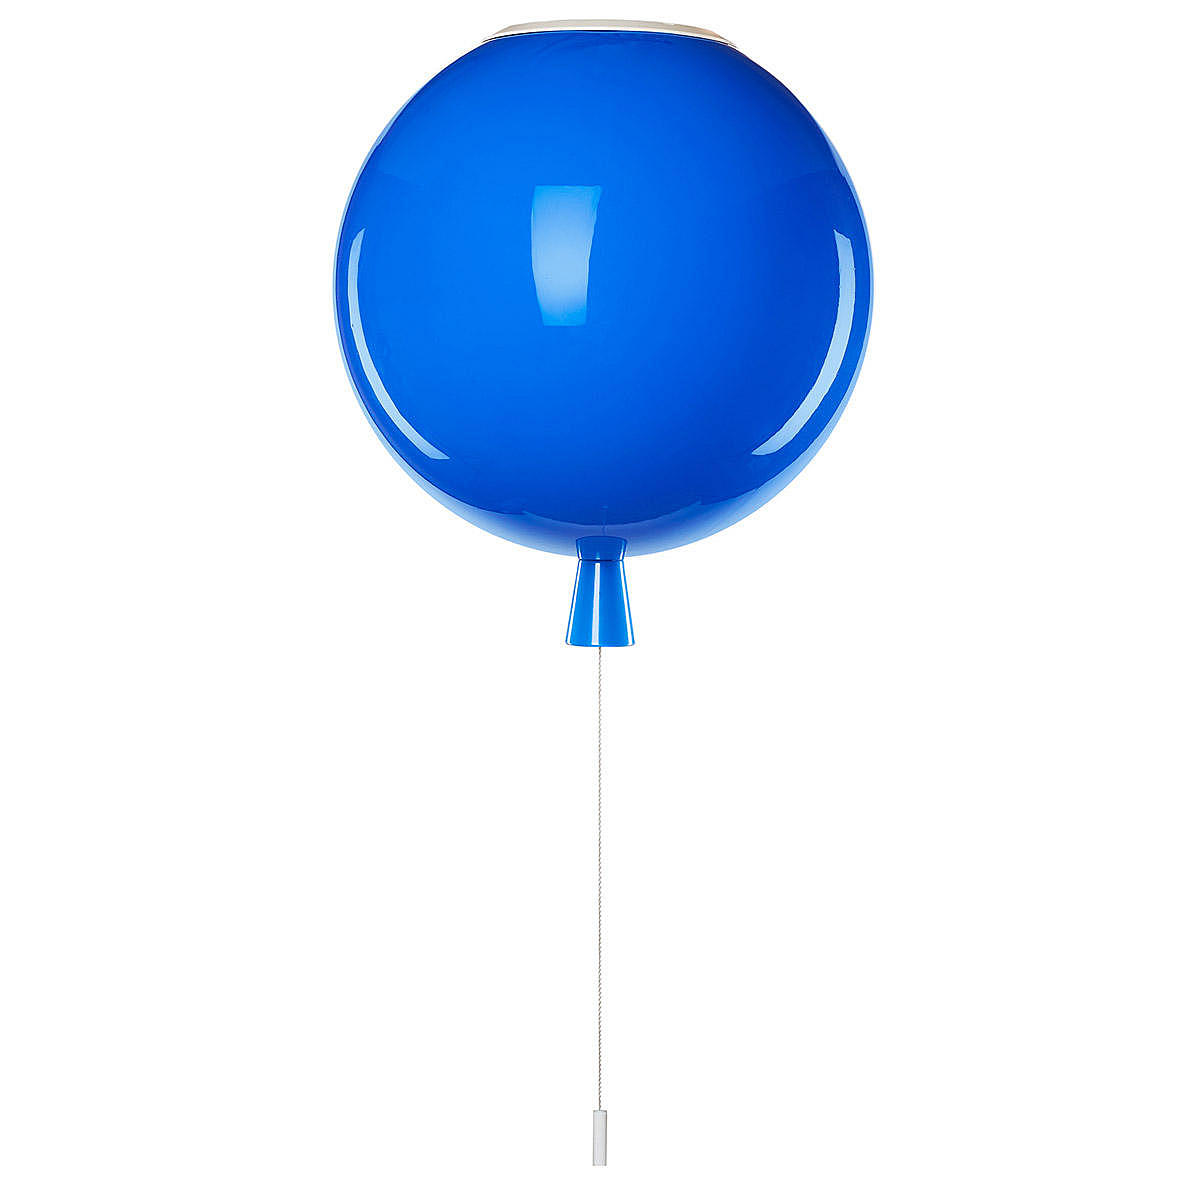     Balloon 5055C/S blue Loft It